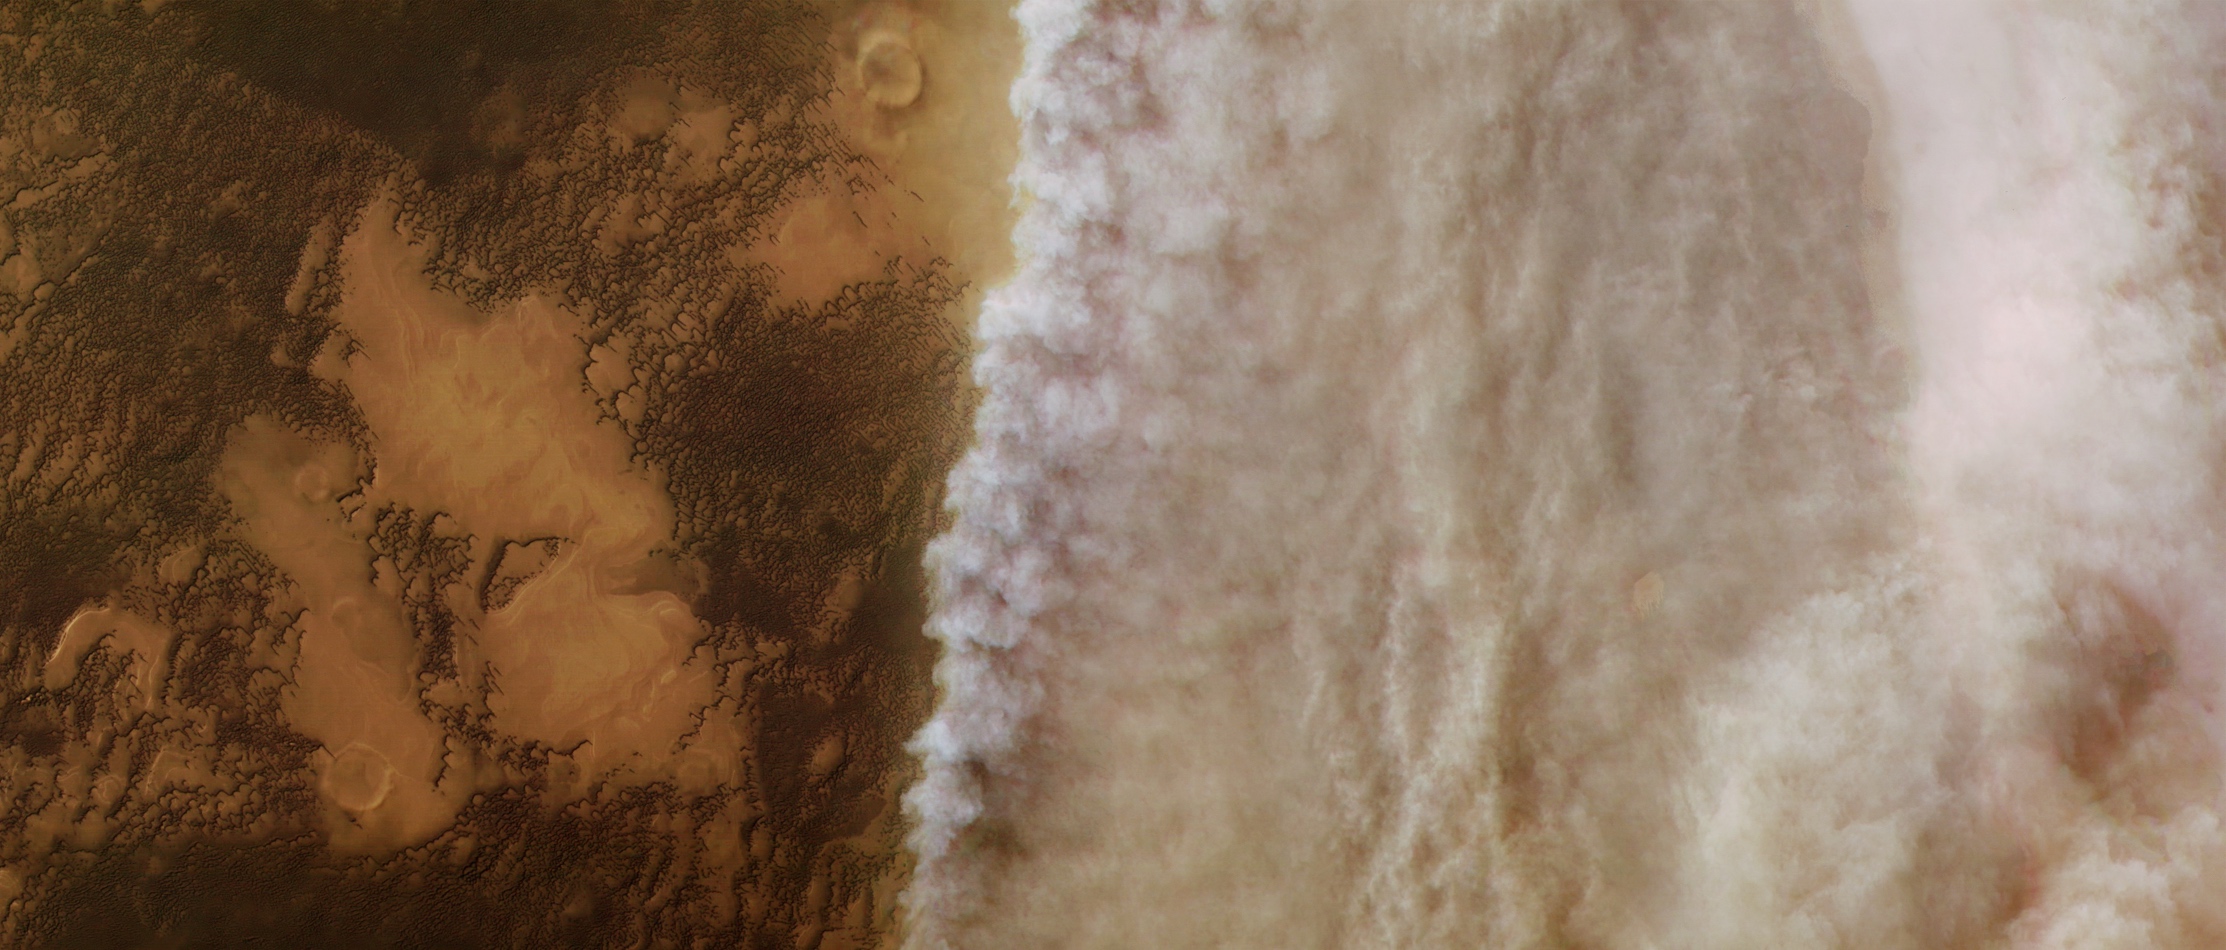 Tempête de poussière aux portes de la calotte polaire nord de Mars. Photo prise par Mars Express en avril 2018. © ESA, DLR/FU Berlin, CC by-sa 3.0 IGO